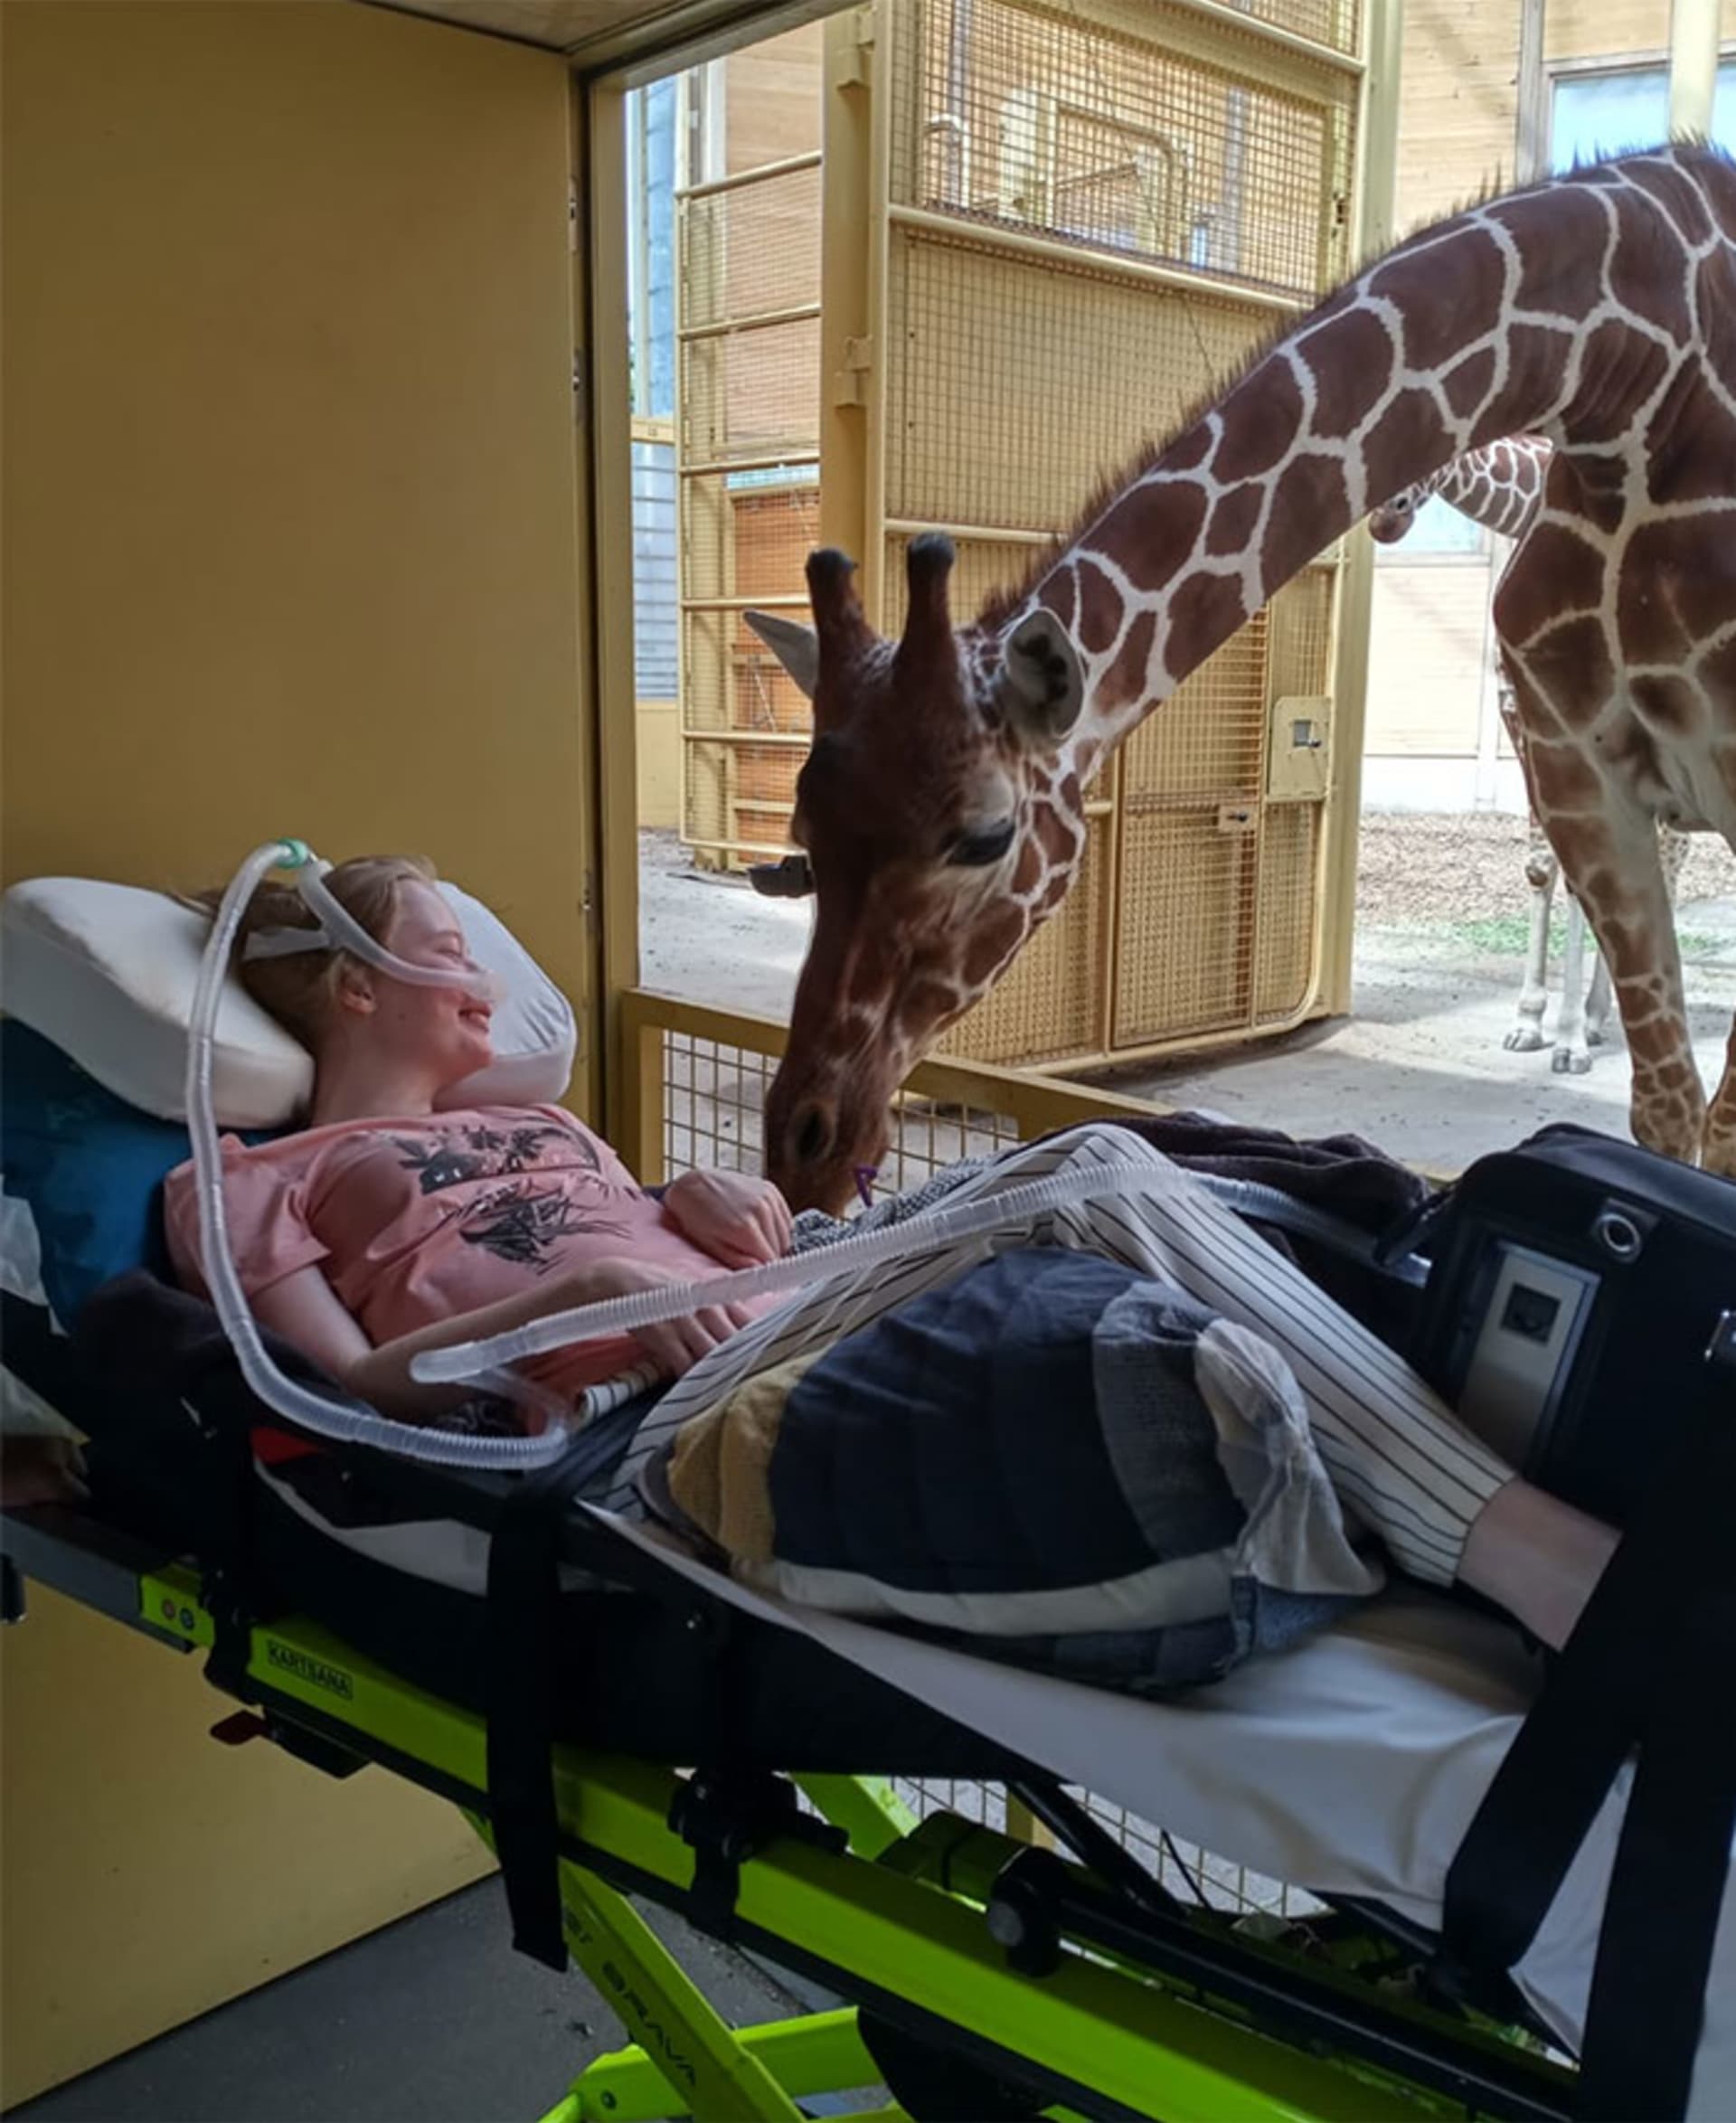 Žirafa zdraví smrtelně nemocnou dívku v rámci posledního přání